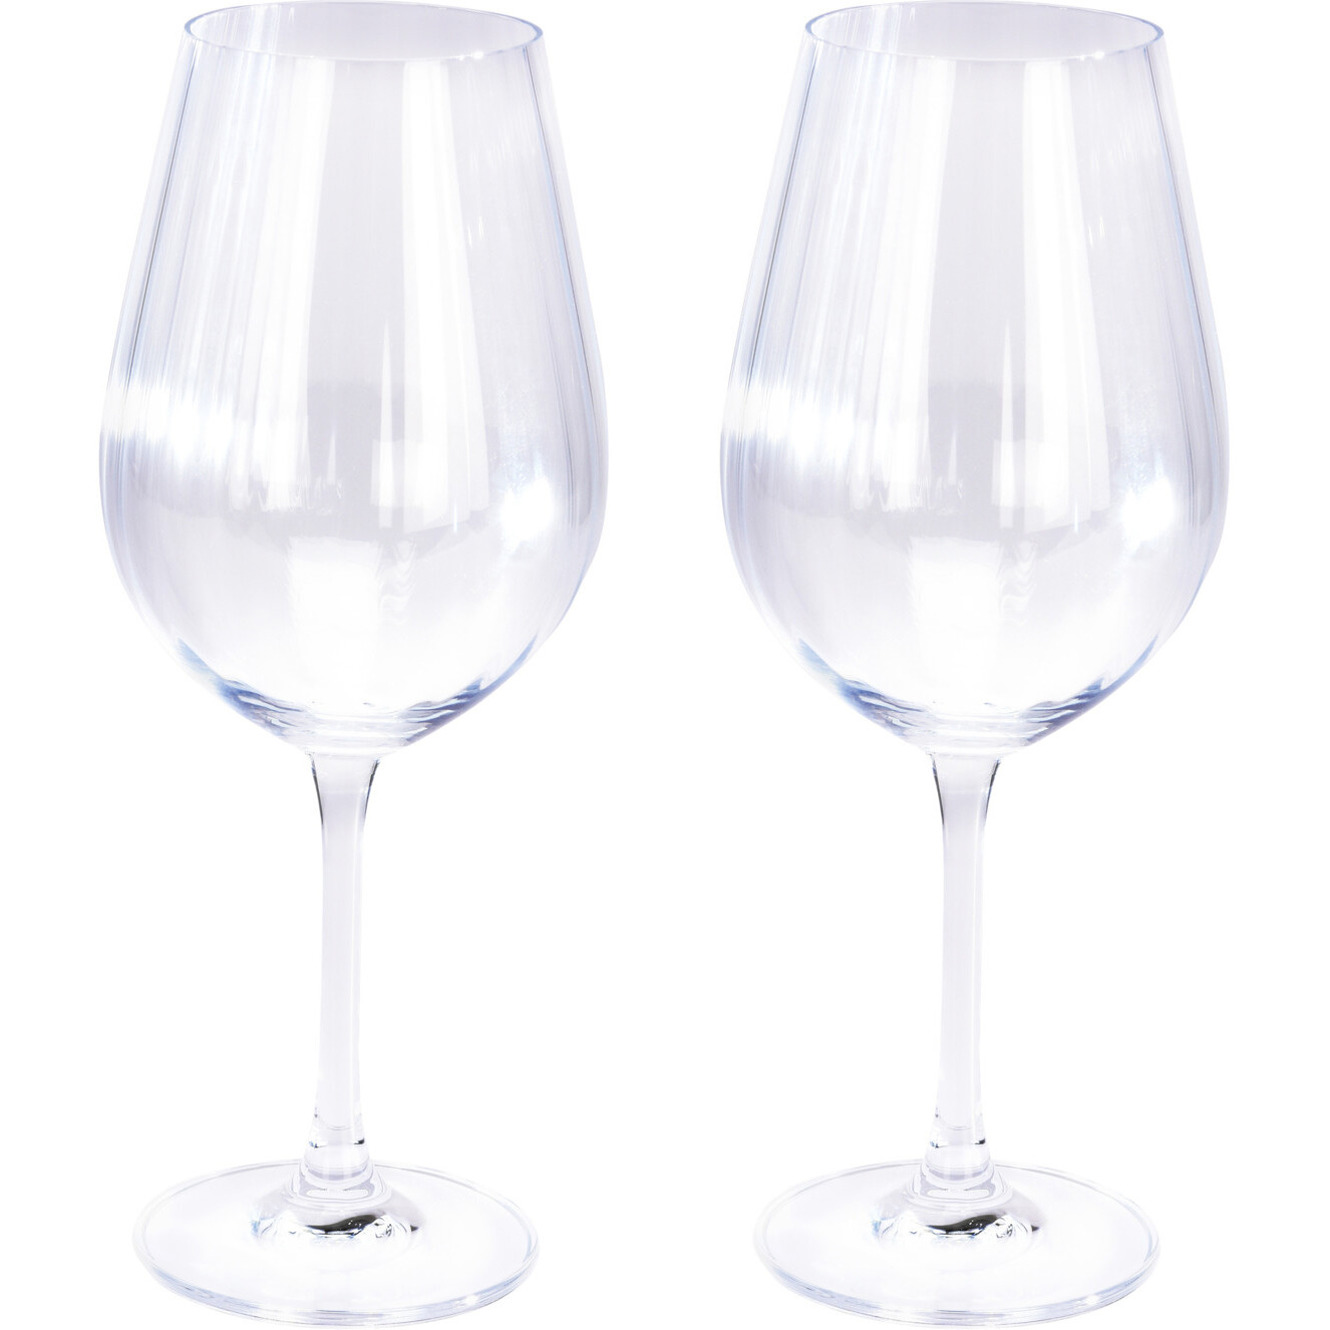 2x Witte wijnglazen 52 cl/520 ml van kristalglas